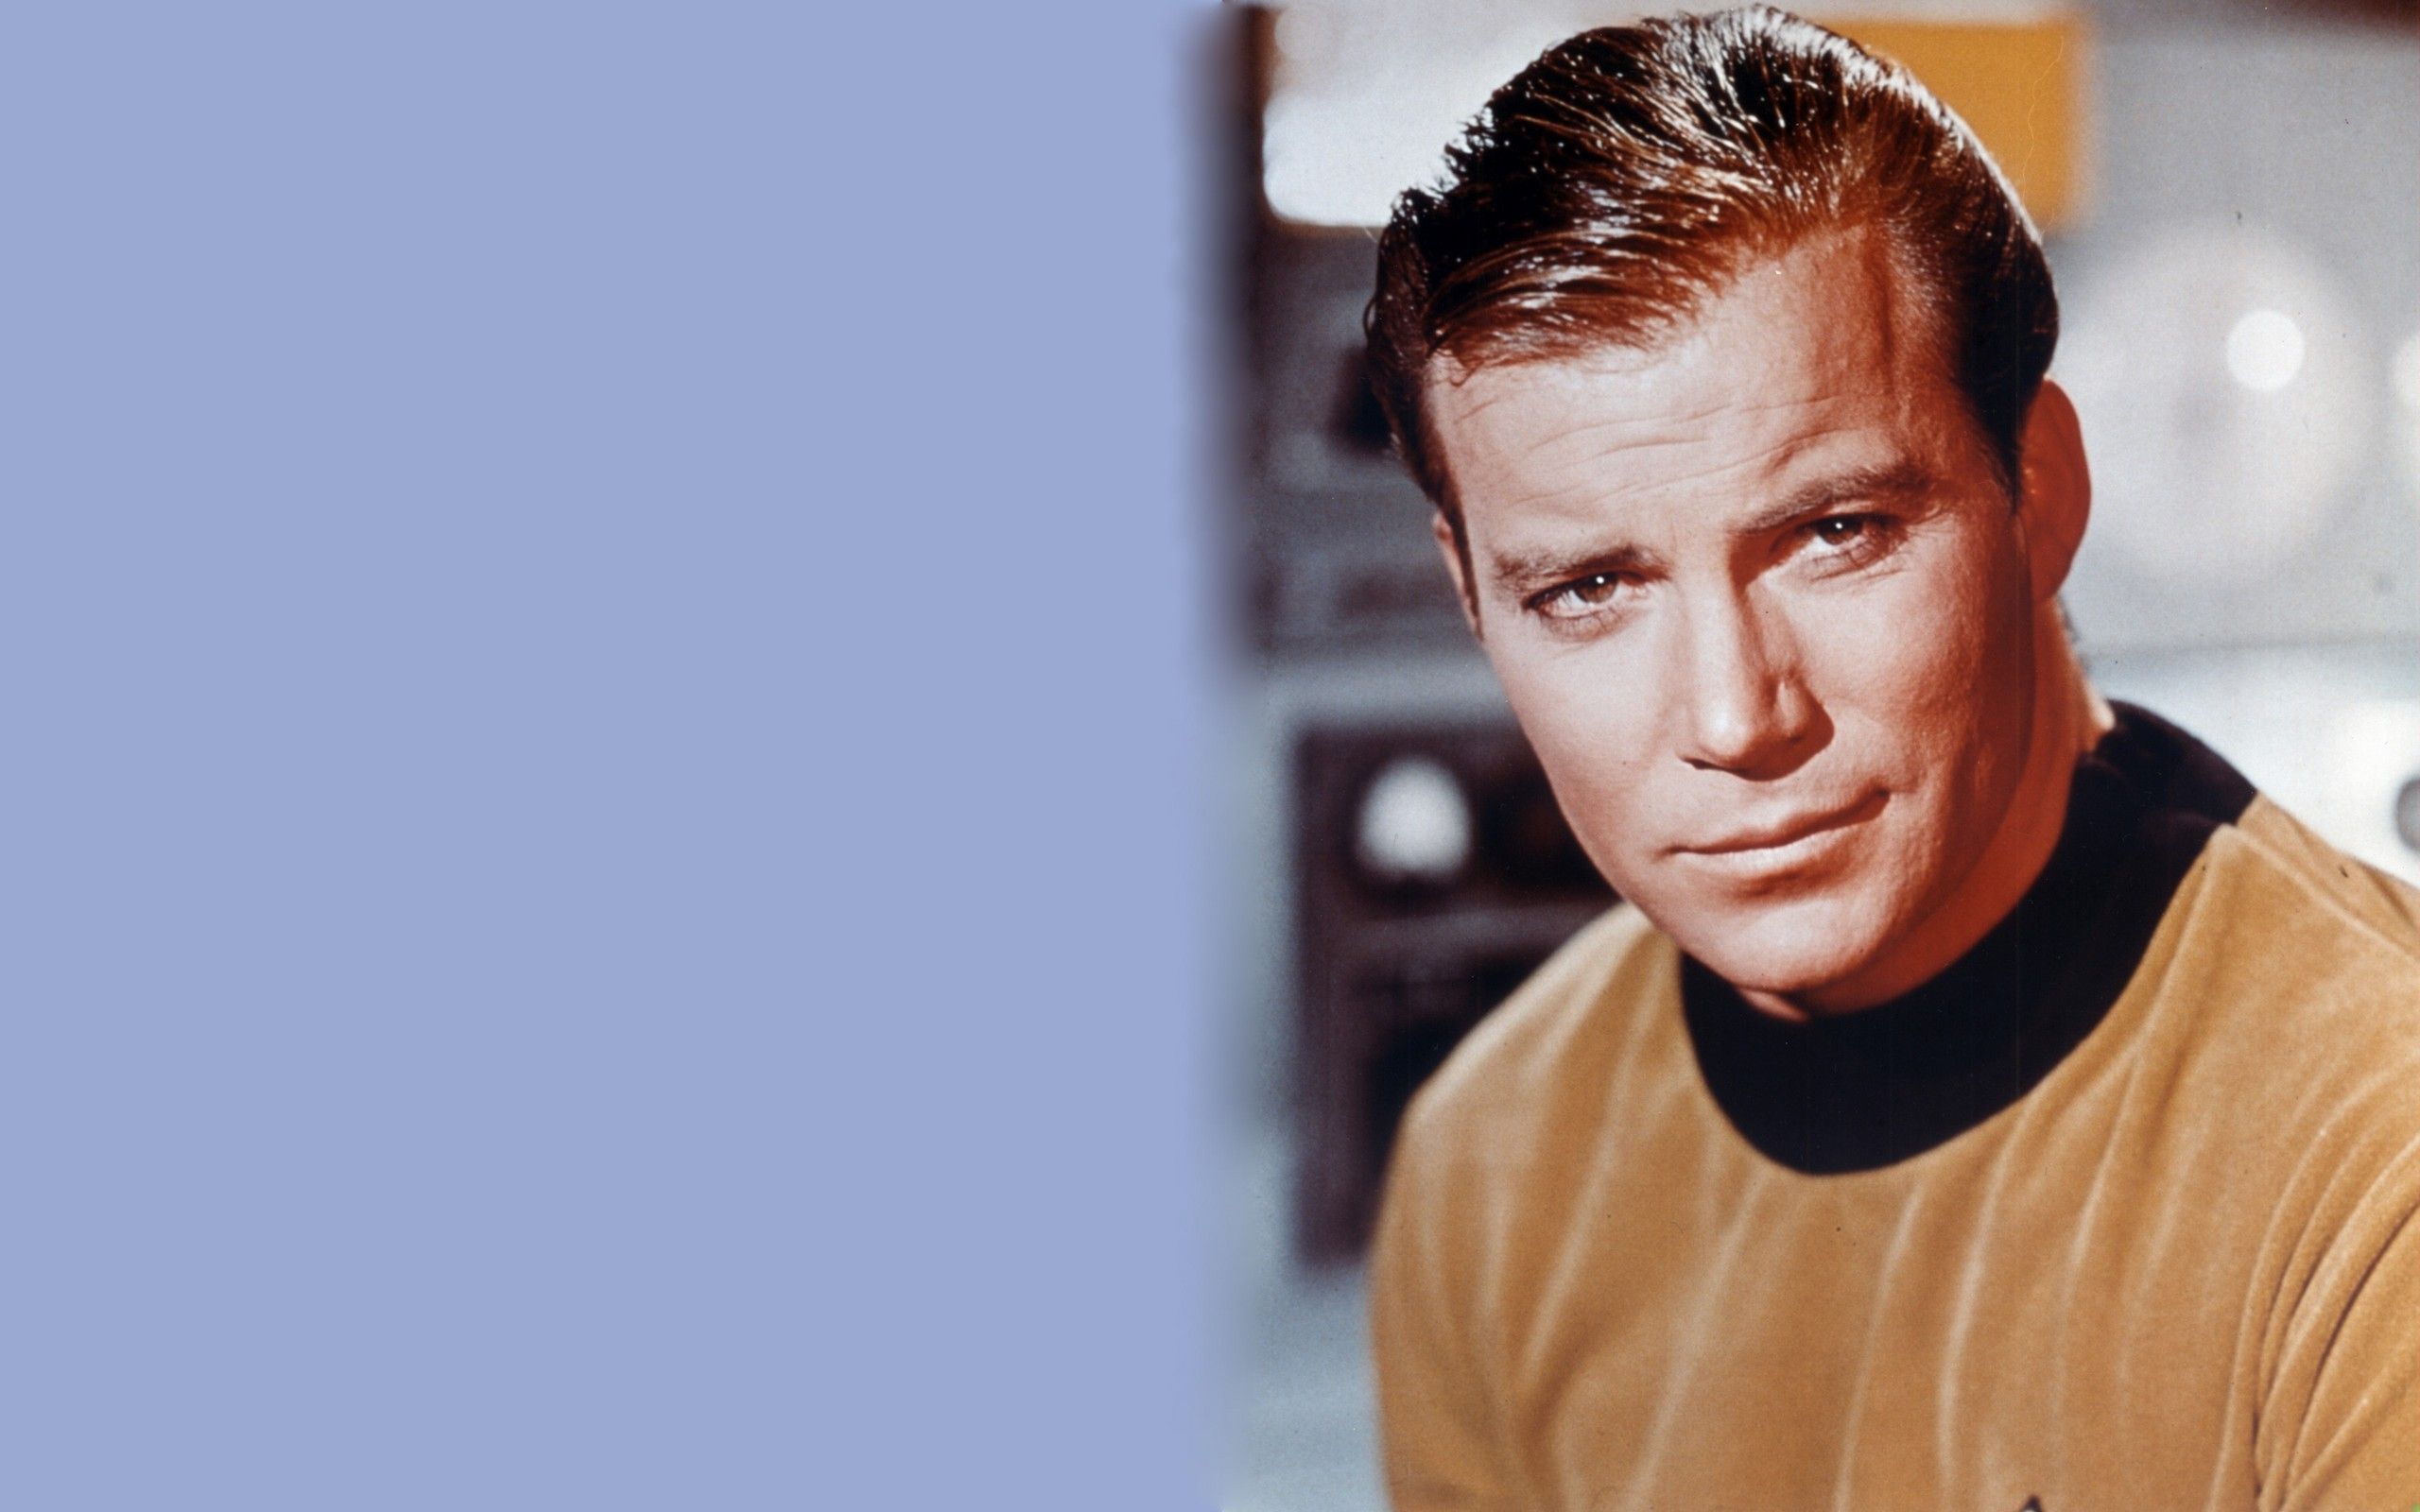 Captain Kirk Wallpaper. Kirk Star Trek Wallpaper, Falkirk Wheel Wallpaper and Captain Kirk Wallpaper